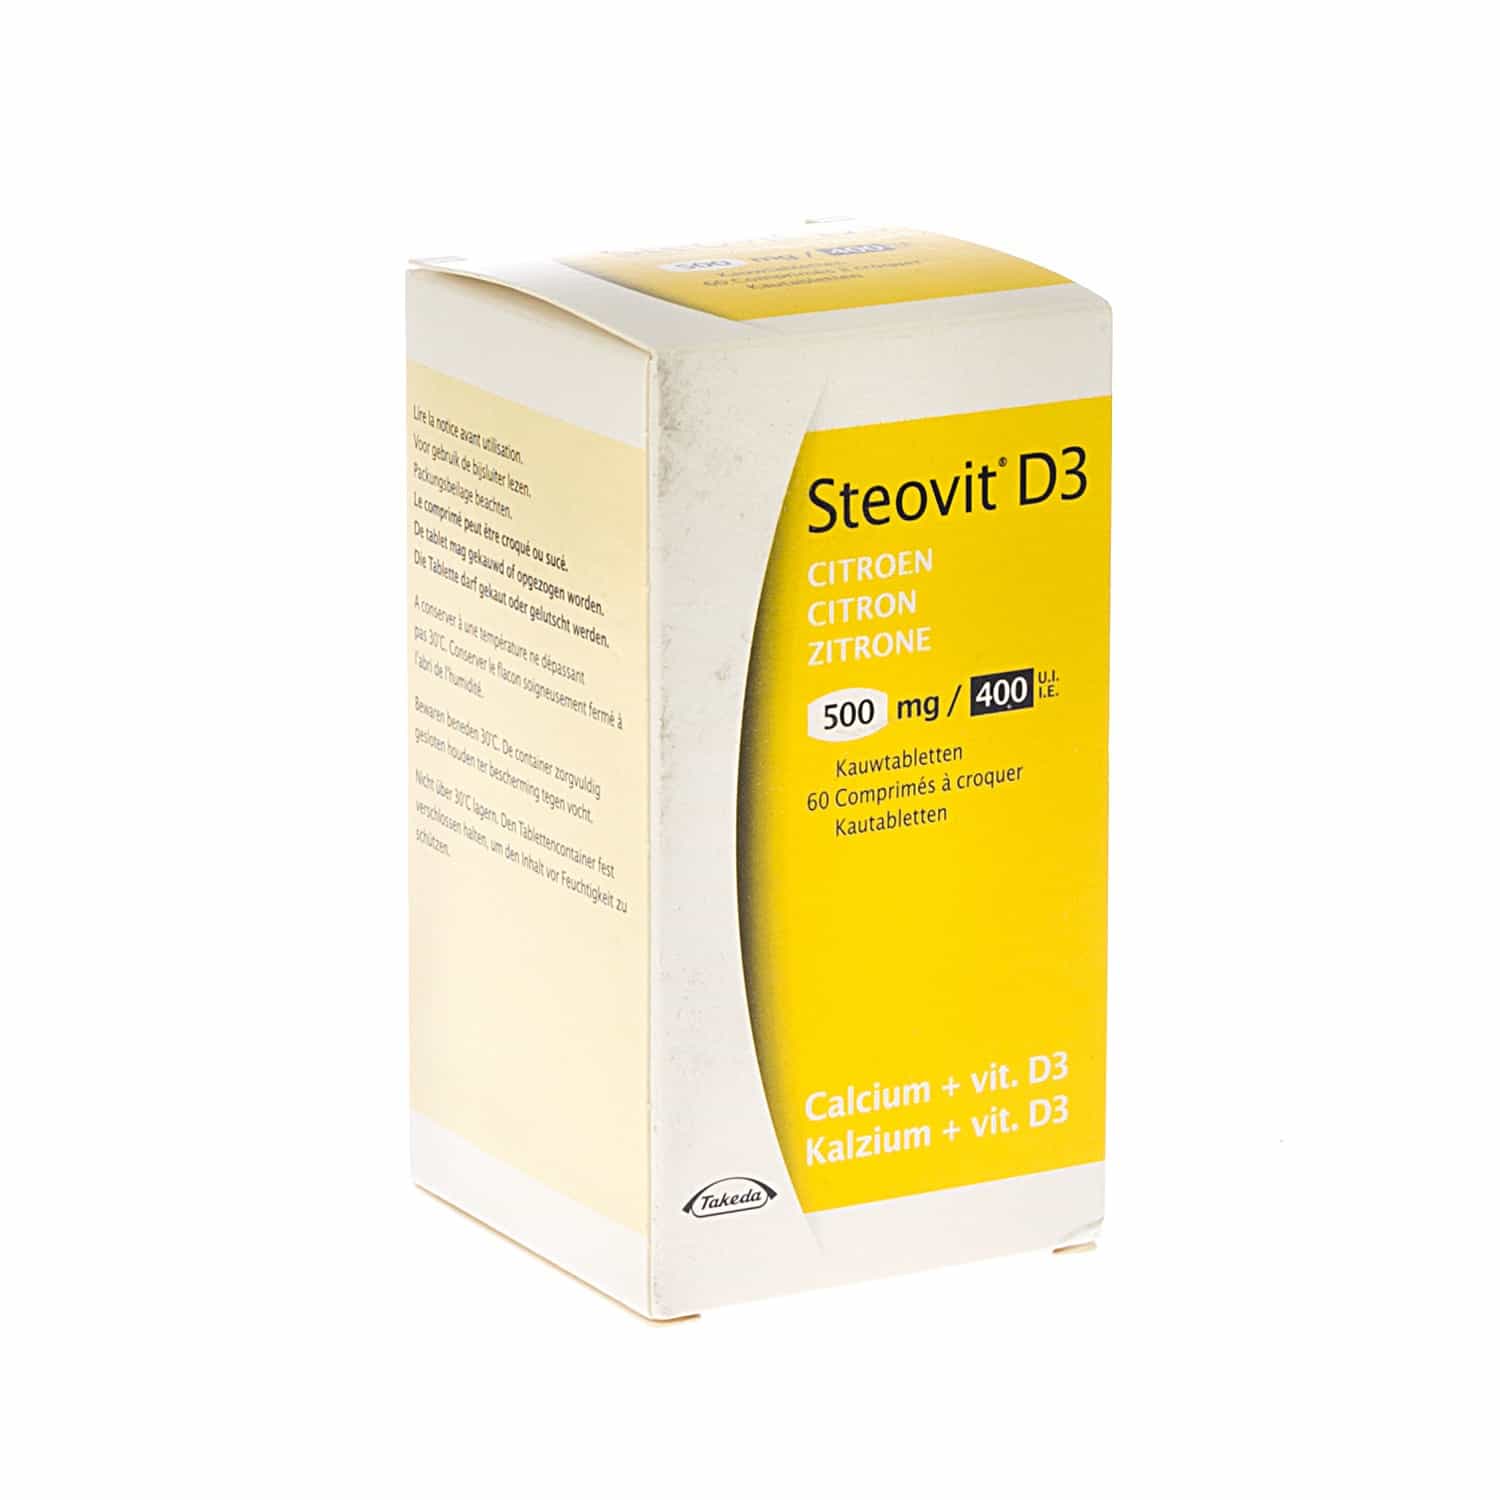 Steovit D3 500 mg/400 IU